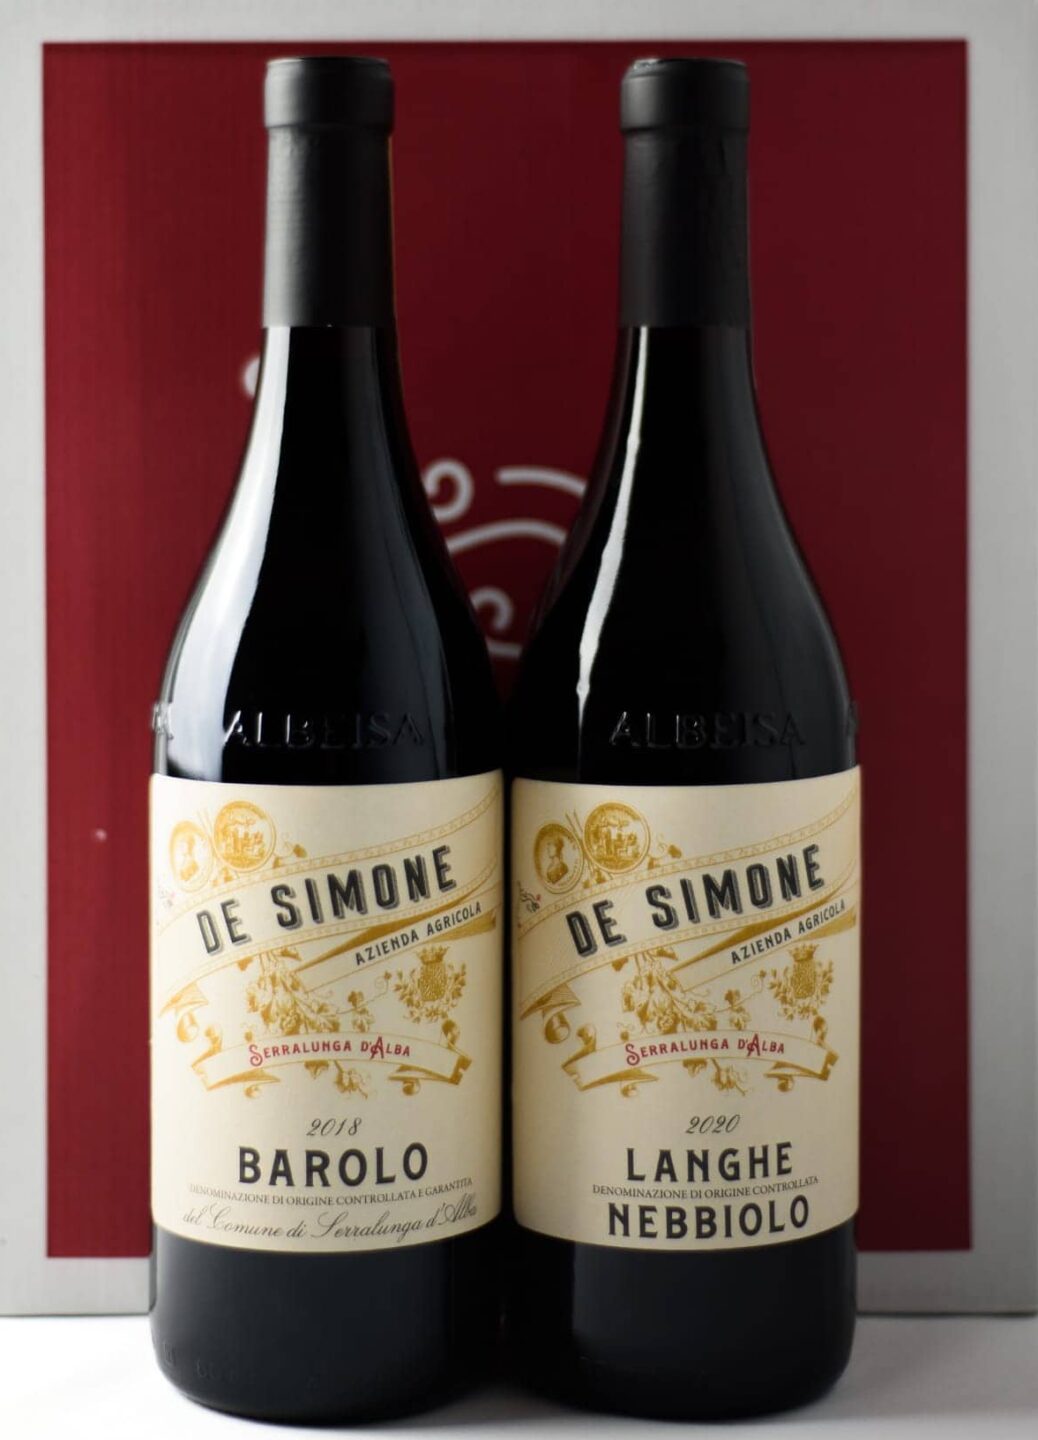 Due bottiglie dell'azienda De Simone: un barolo ed un langhe nebbiolo 